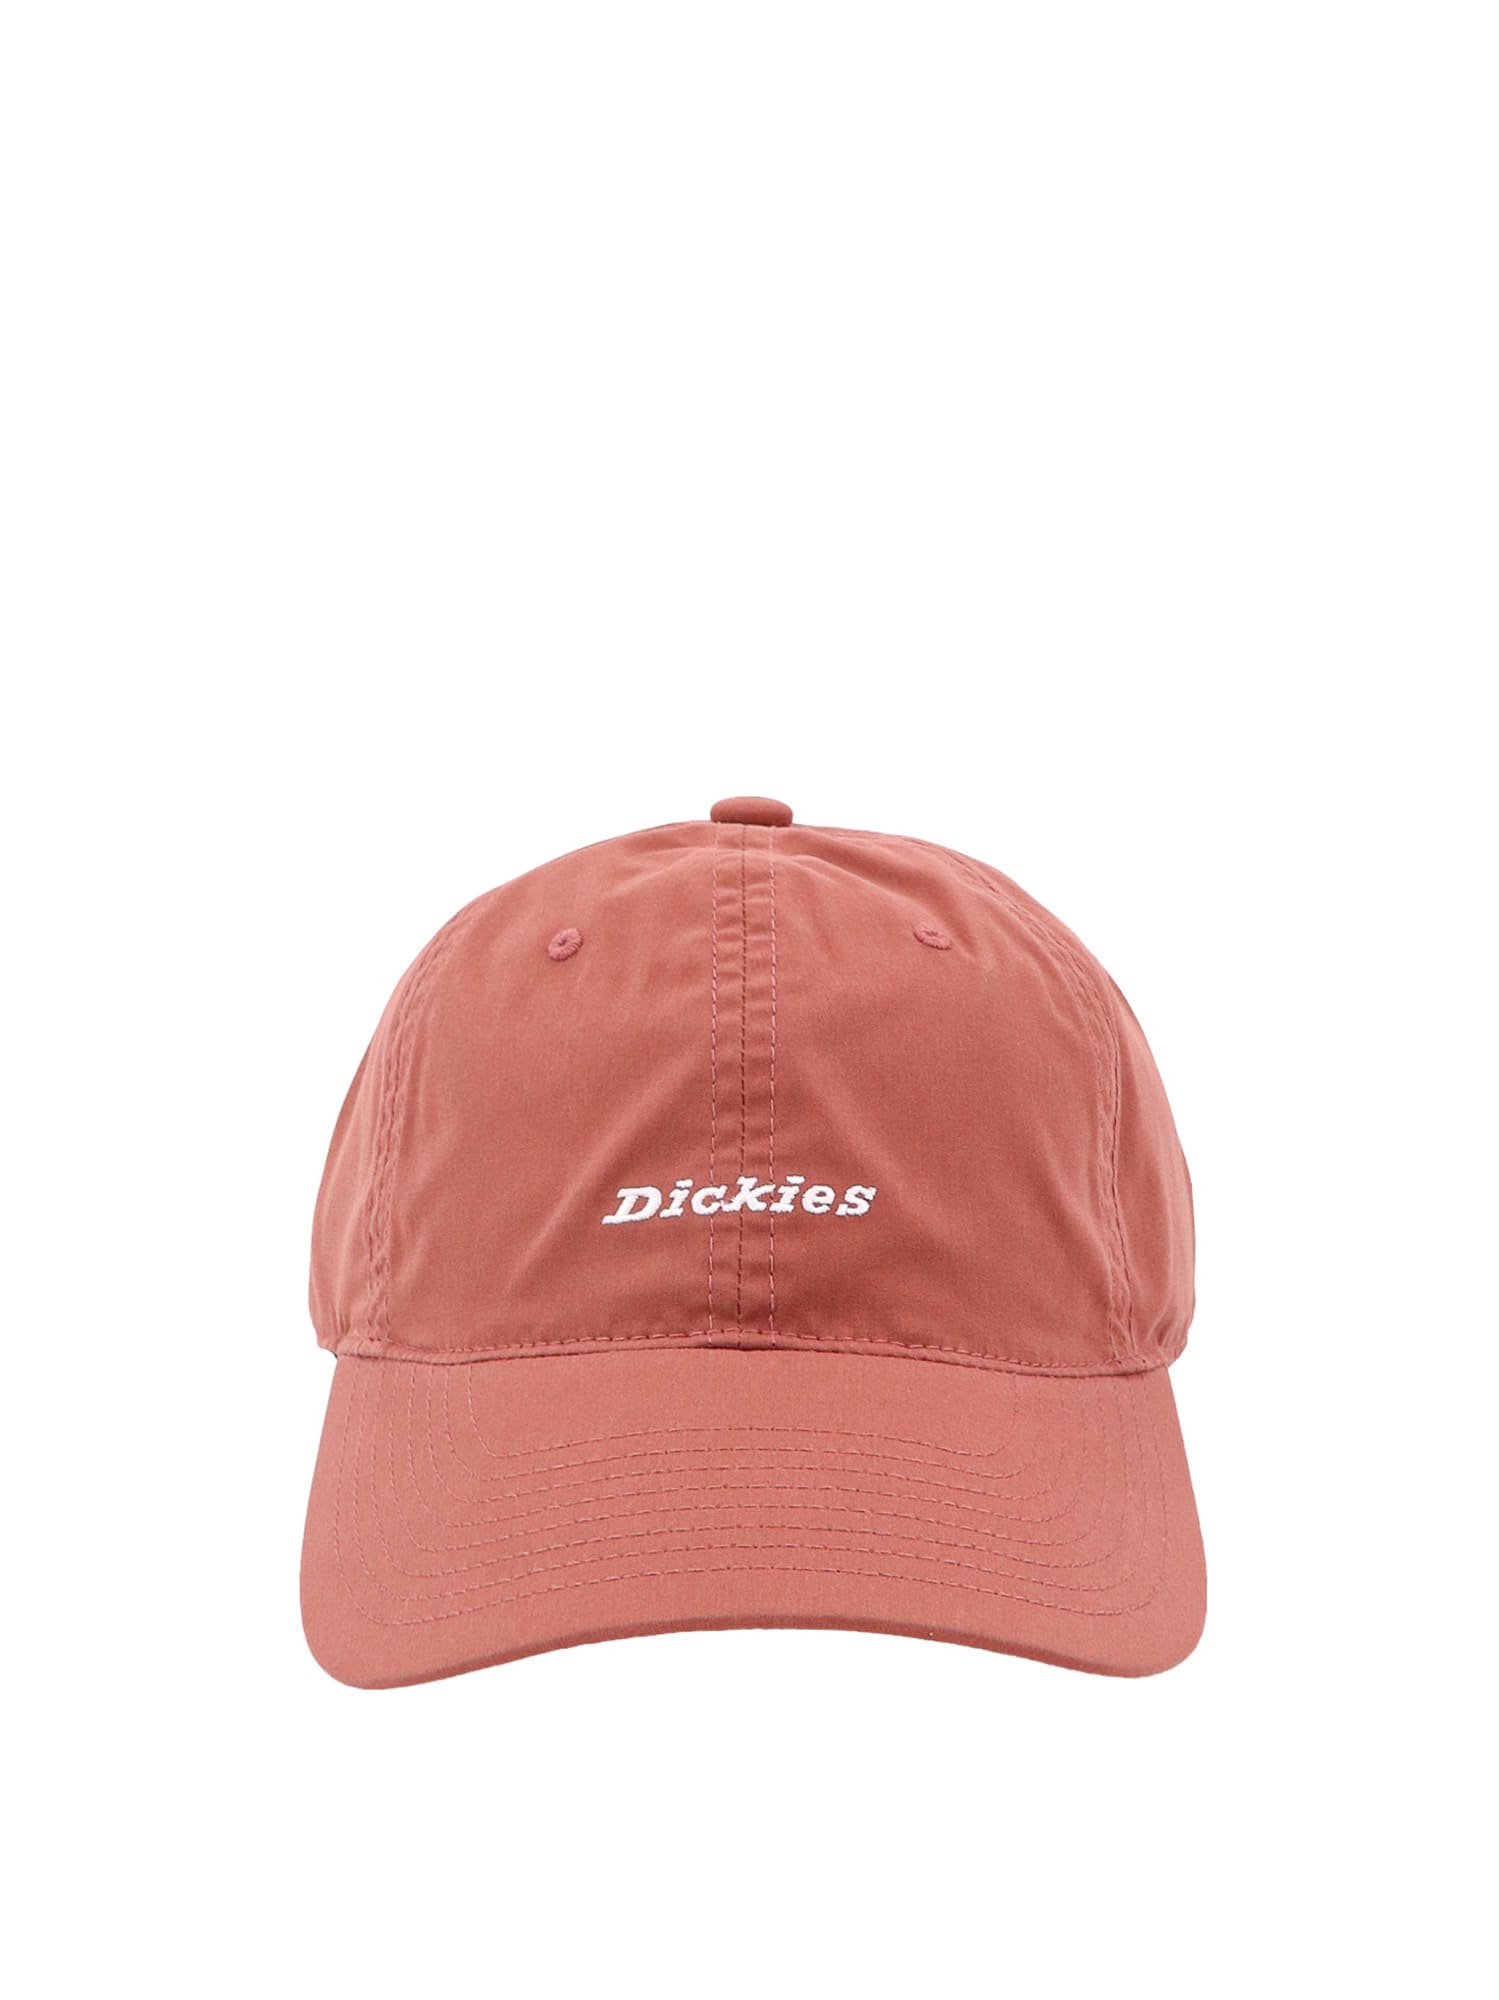 Dickies Hat In Brown